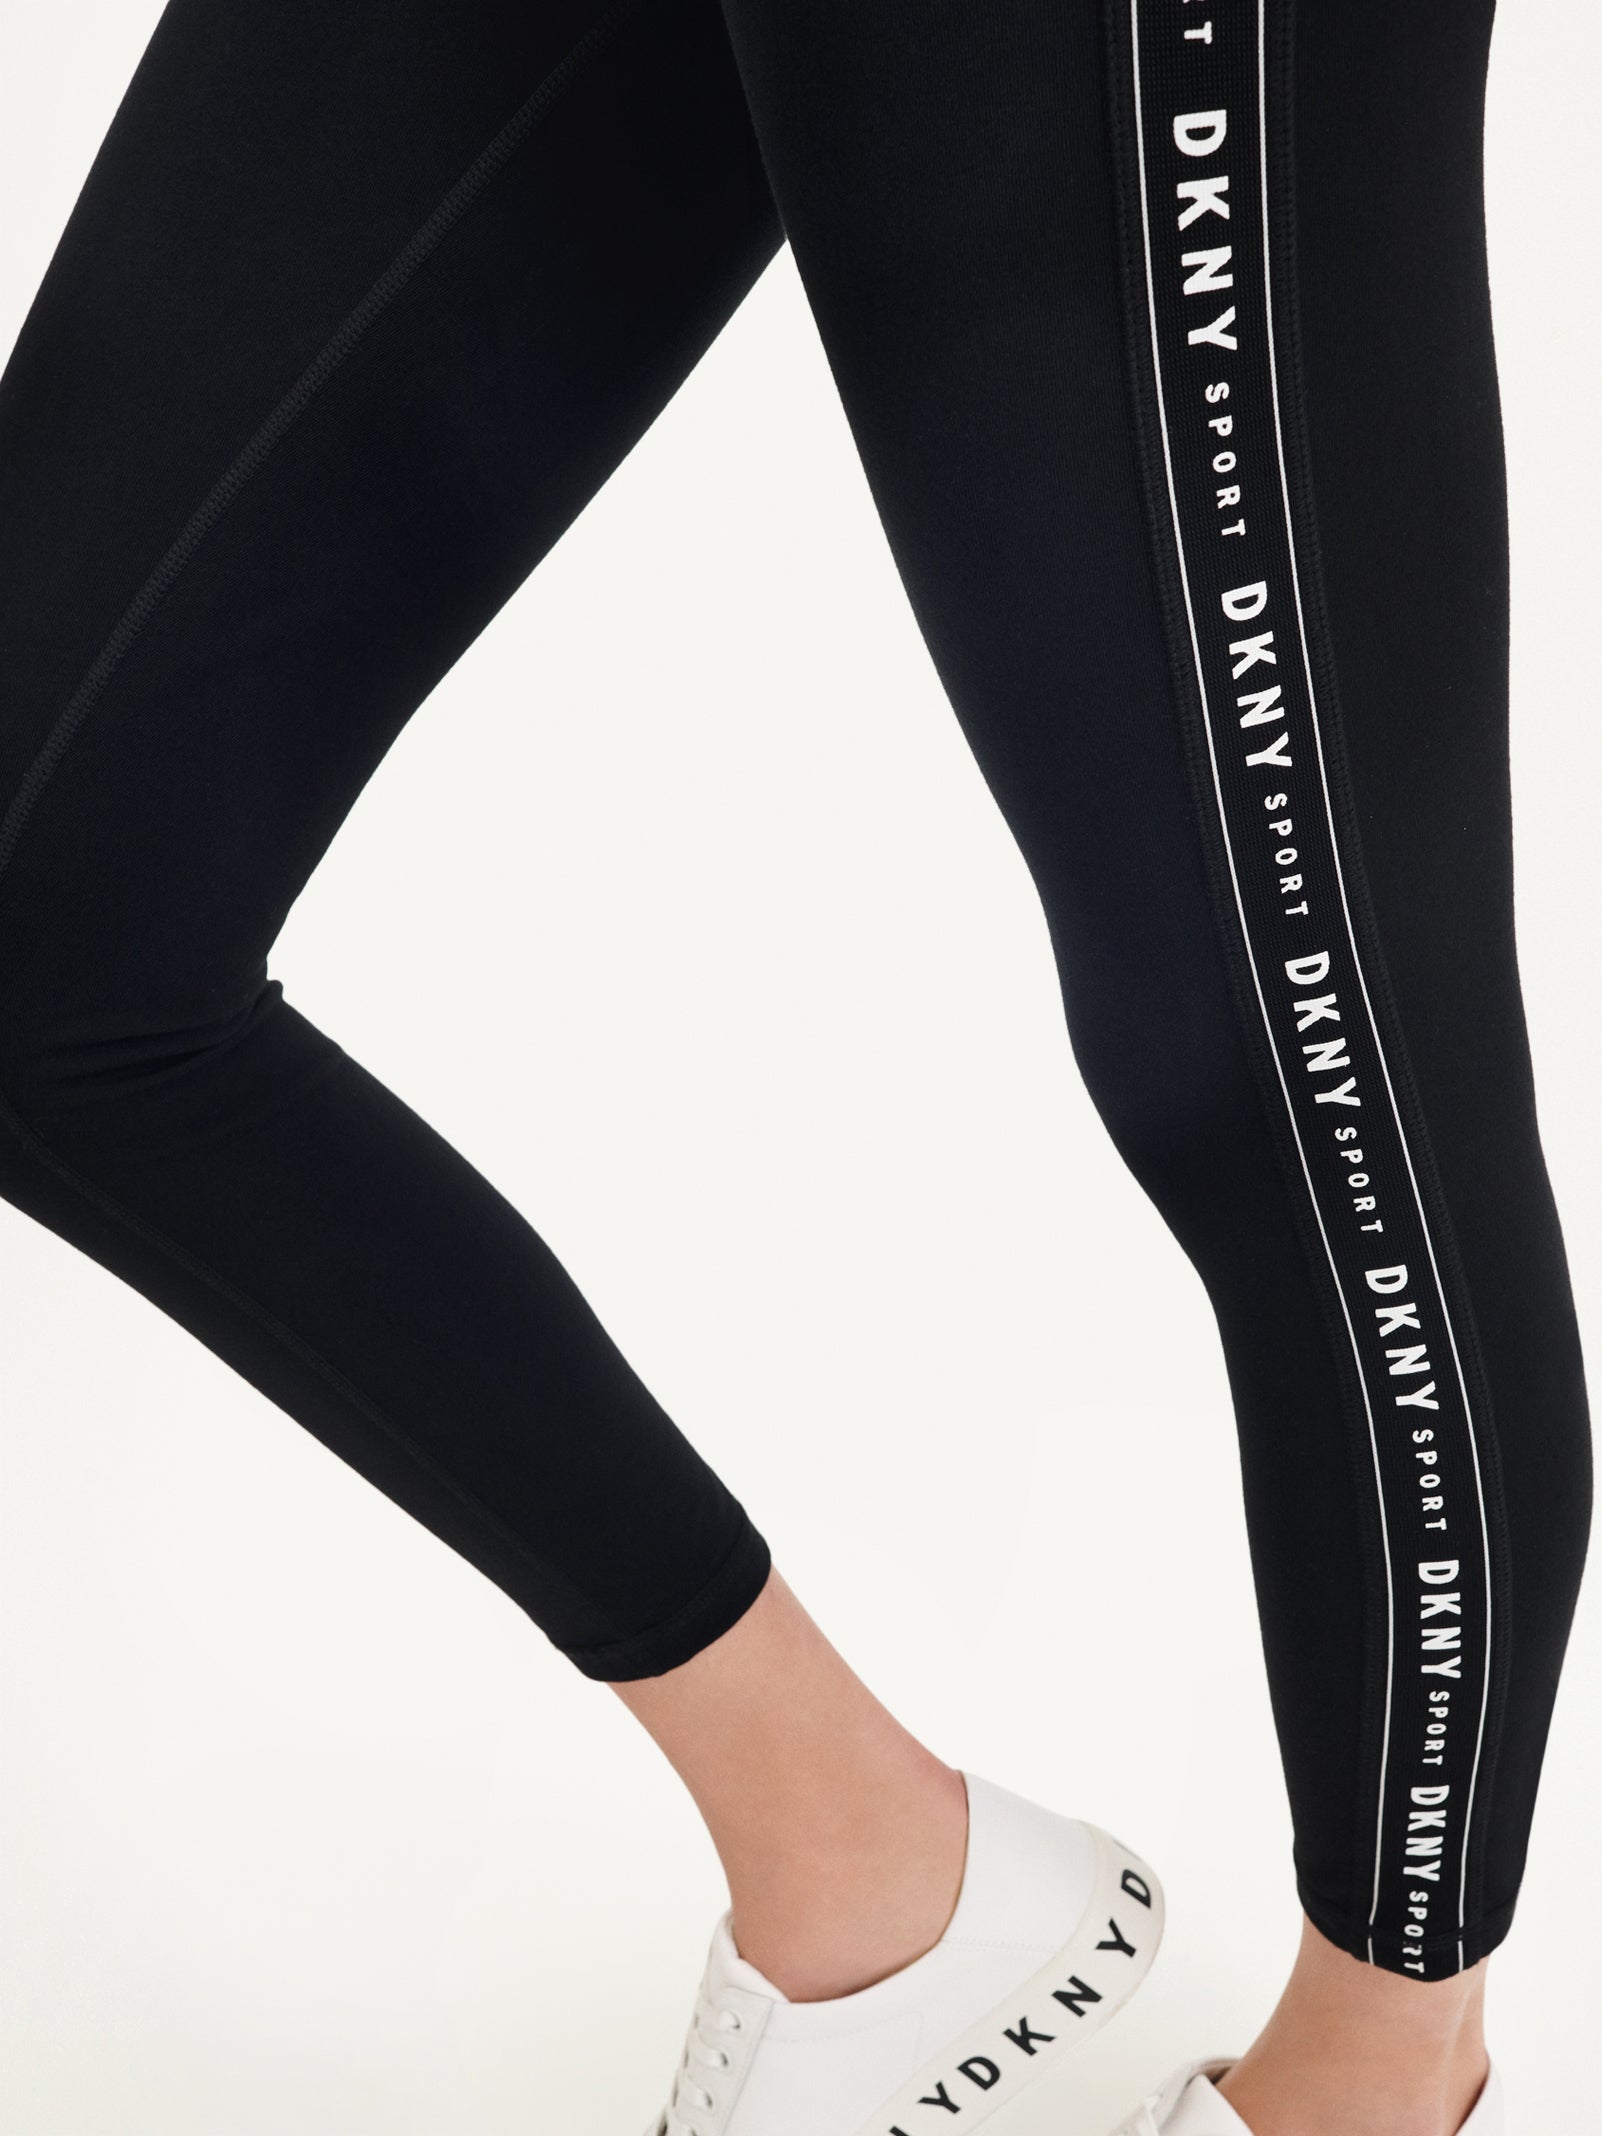 DKNY Women's Medallion Logo Leggings Black Size XS New | eBay